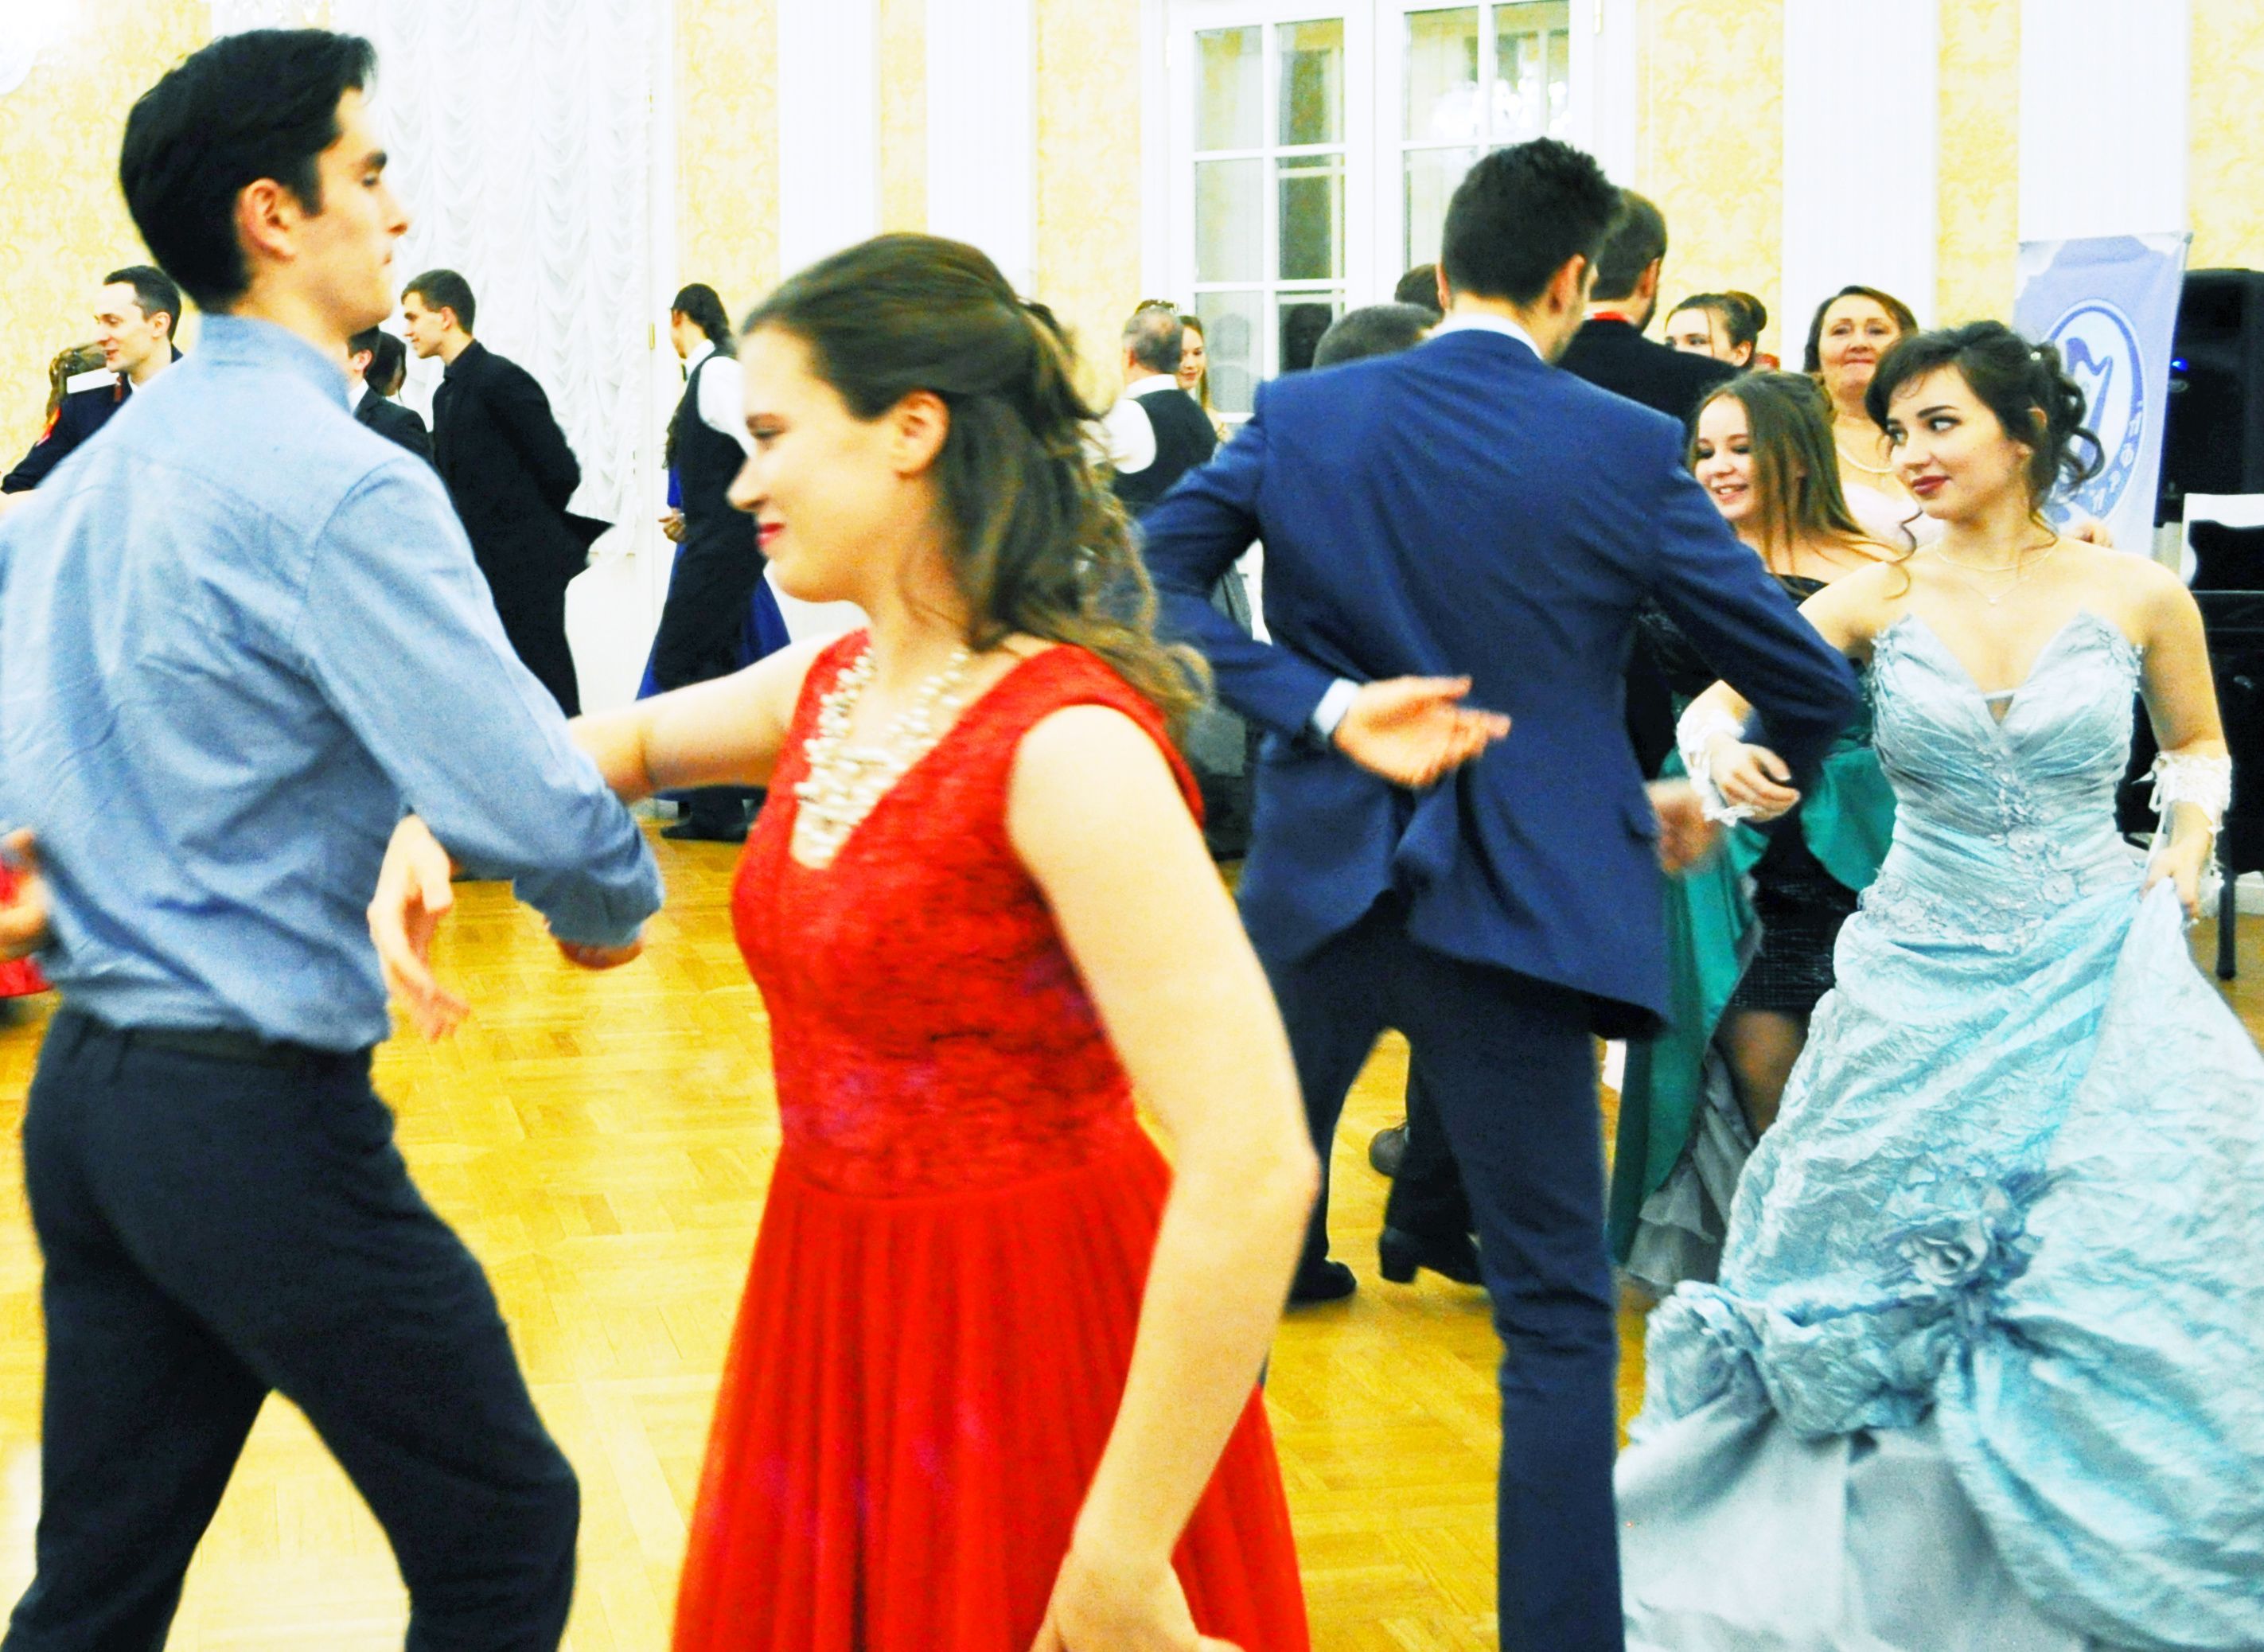 Добро пожаловать на бал: танцевальный вечер организовали в усадьбе Вороново